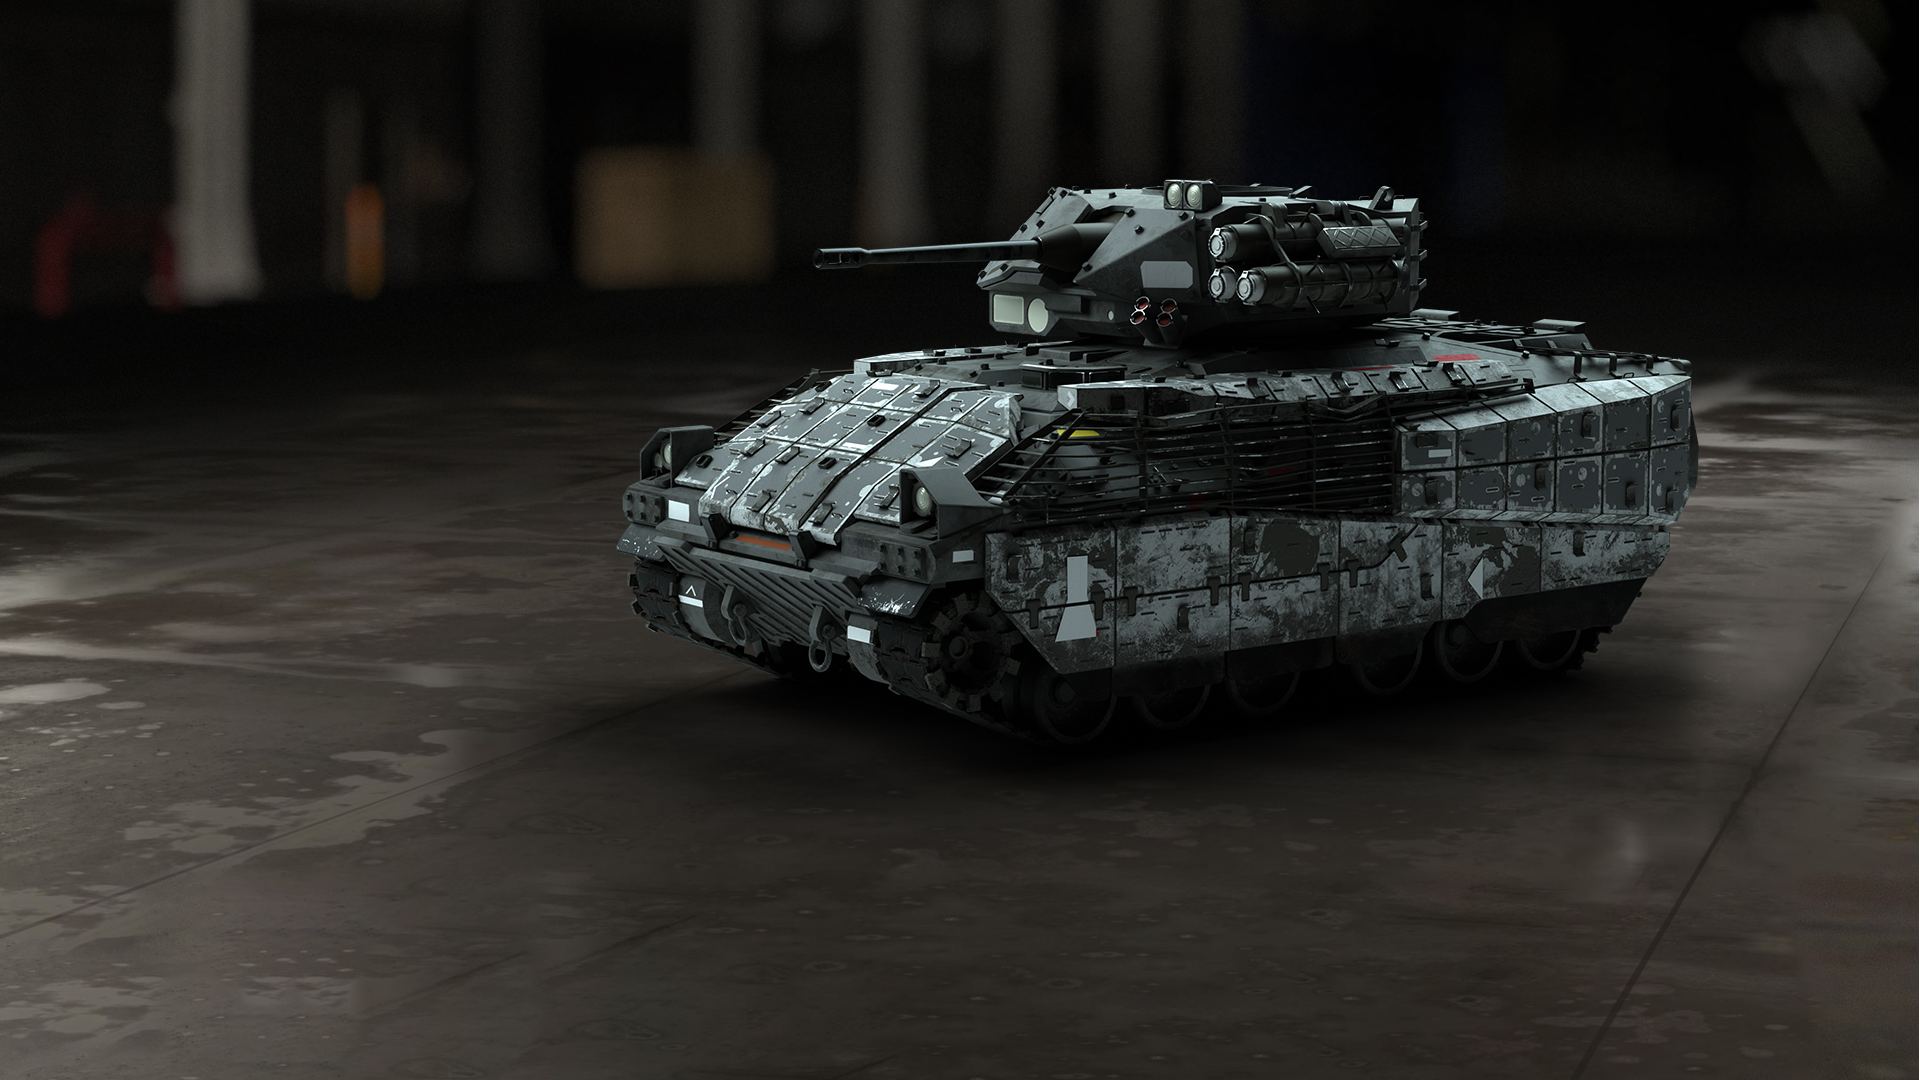 Modern Warfare 2 Vehicles: The light tank can be seen